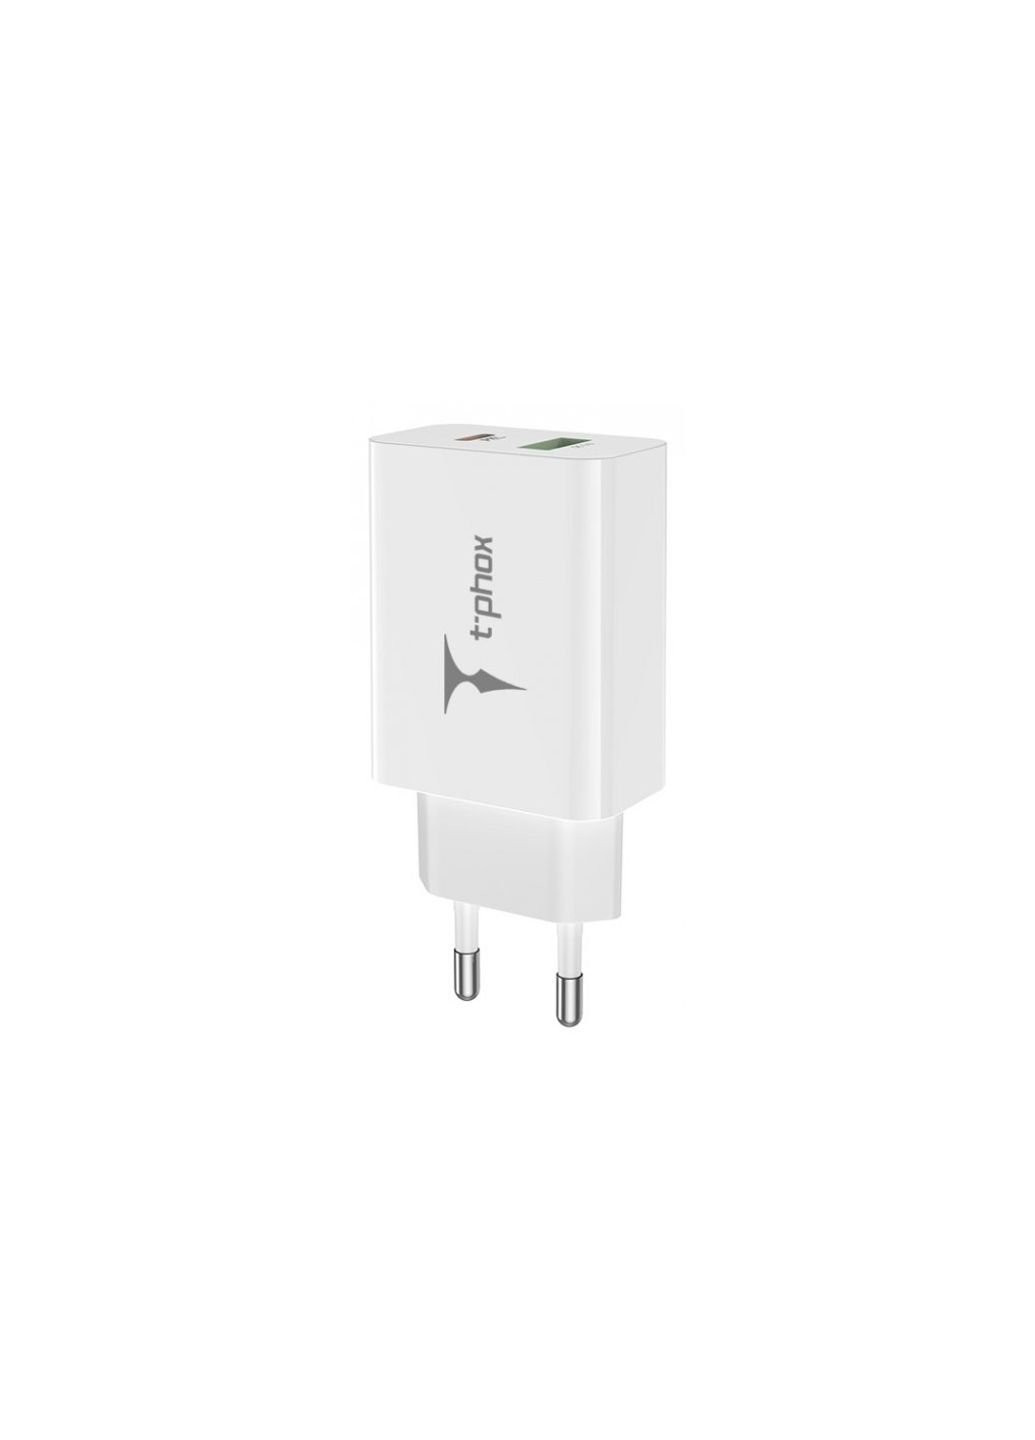 Зарядное устройство (Speedy 20W PD+USB) T-PHOX speedy 20w 2ports type-c+usb charger (white) (253507386)